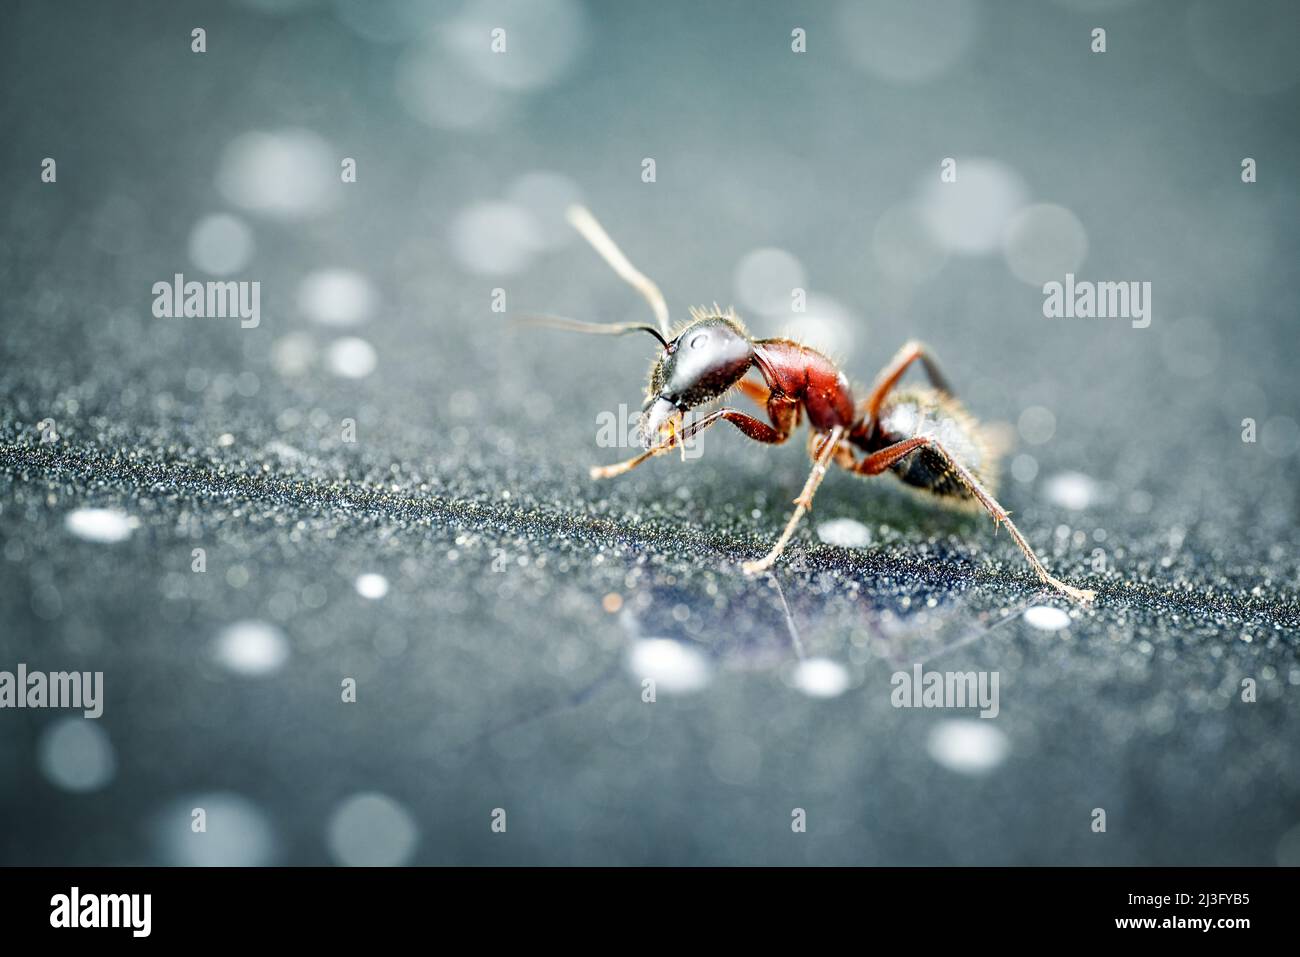 Fotografía macro de una sola hormiga con detalle. Primer plano sobre fondo borroso. Fotografías de alta calidad Foto de stock